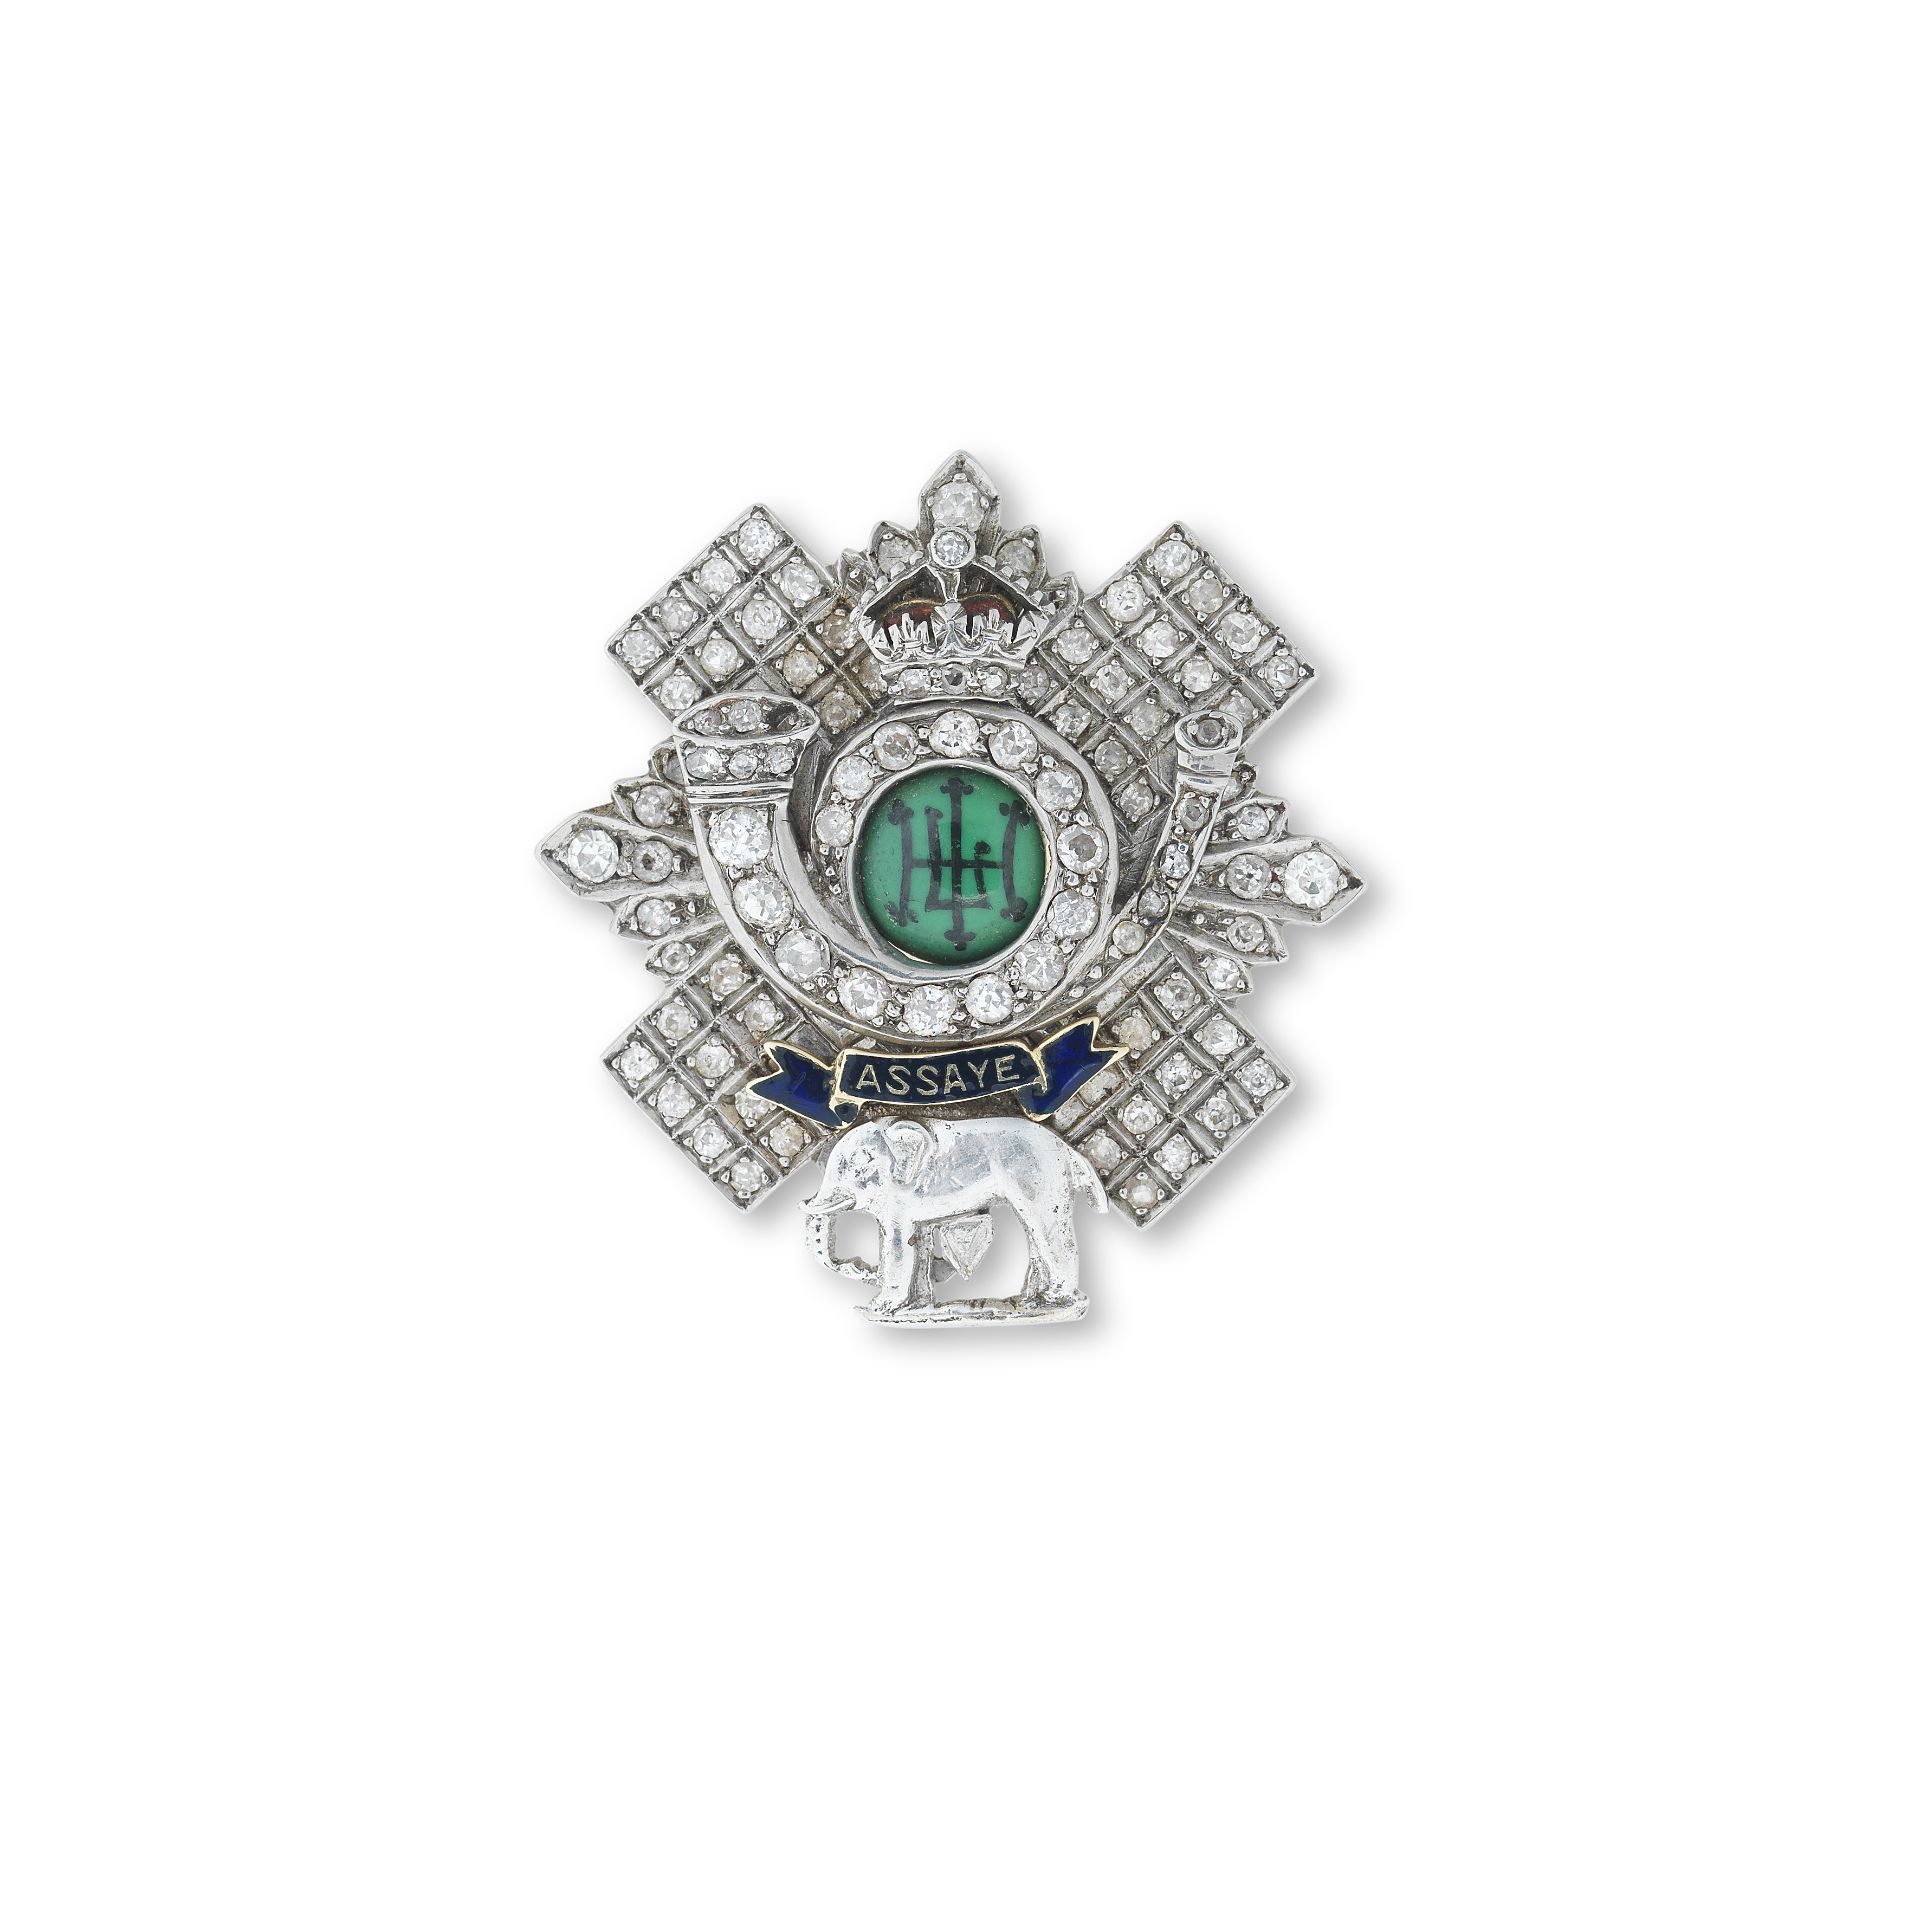 A Highland Light Infantry diamond-set brooch